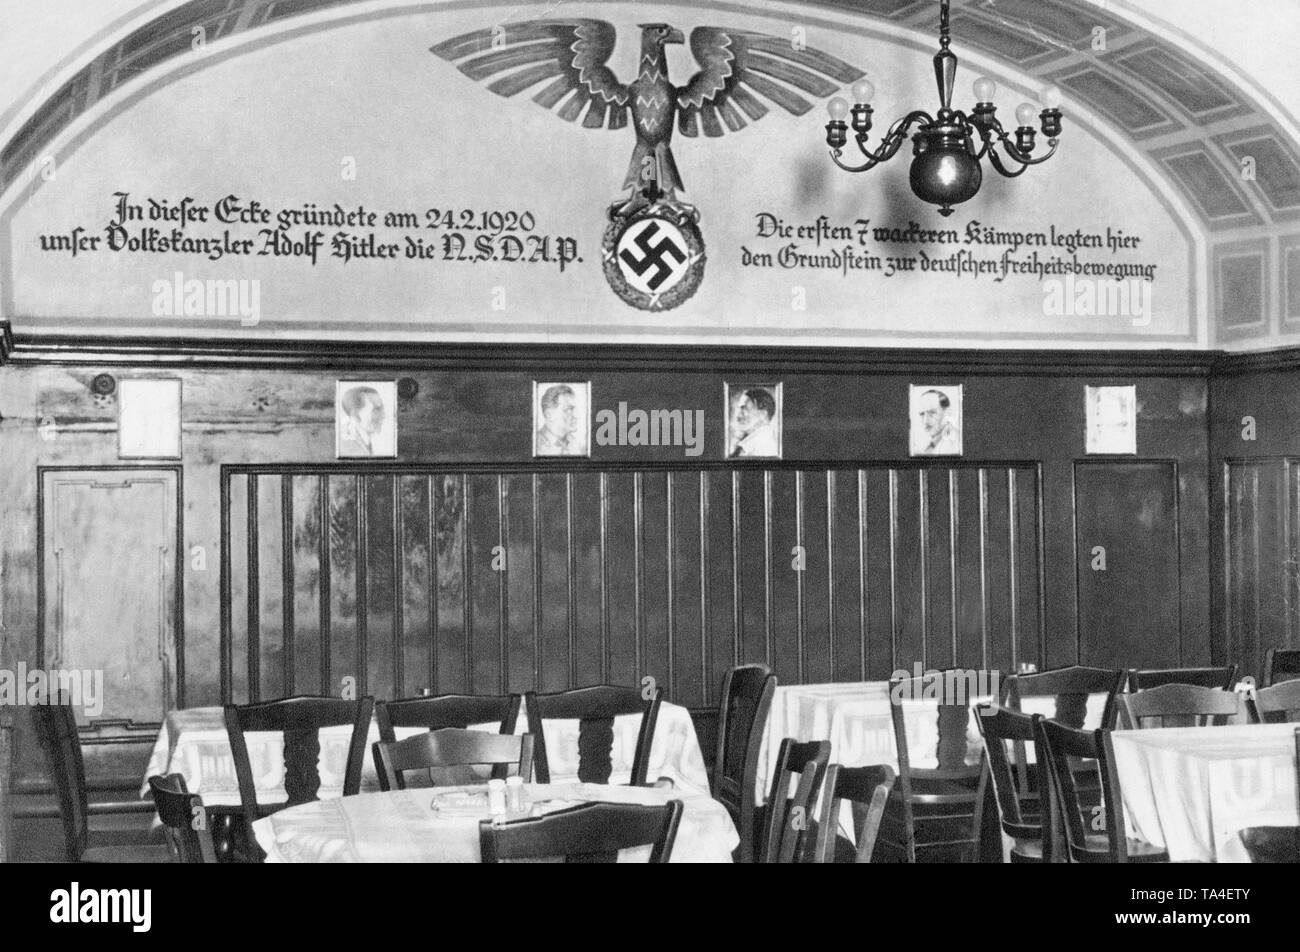 Die Sterneccurbraeu in der Altstadt von München war das erste Büro der NSDAP. Nach der Übernahme, eine Inschrift in der ehemaligen Restaurant gestellt wurde: 'Unser Volkskanzler Adolf Hitler die NSDAP in dieser Ecke am 24.2.1920. Die ersten mutigen Kämpfer legte den Grundstein für die Deutsche Befreiungsbewegung." Unter ihnen sind Fotos von der ersten Führer der Partei (Undatiertes Foto). Stockfoto